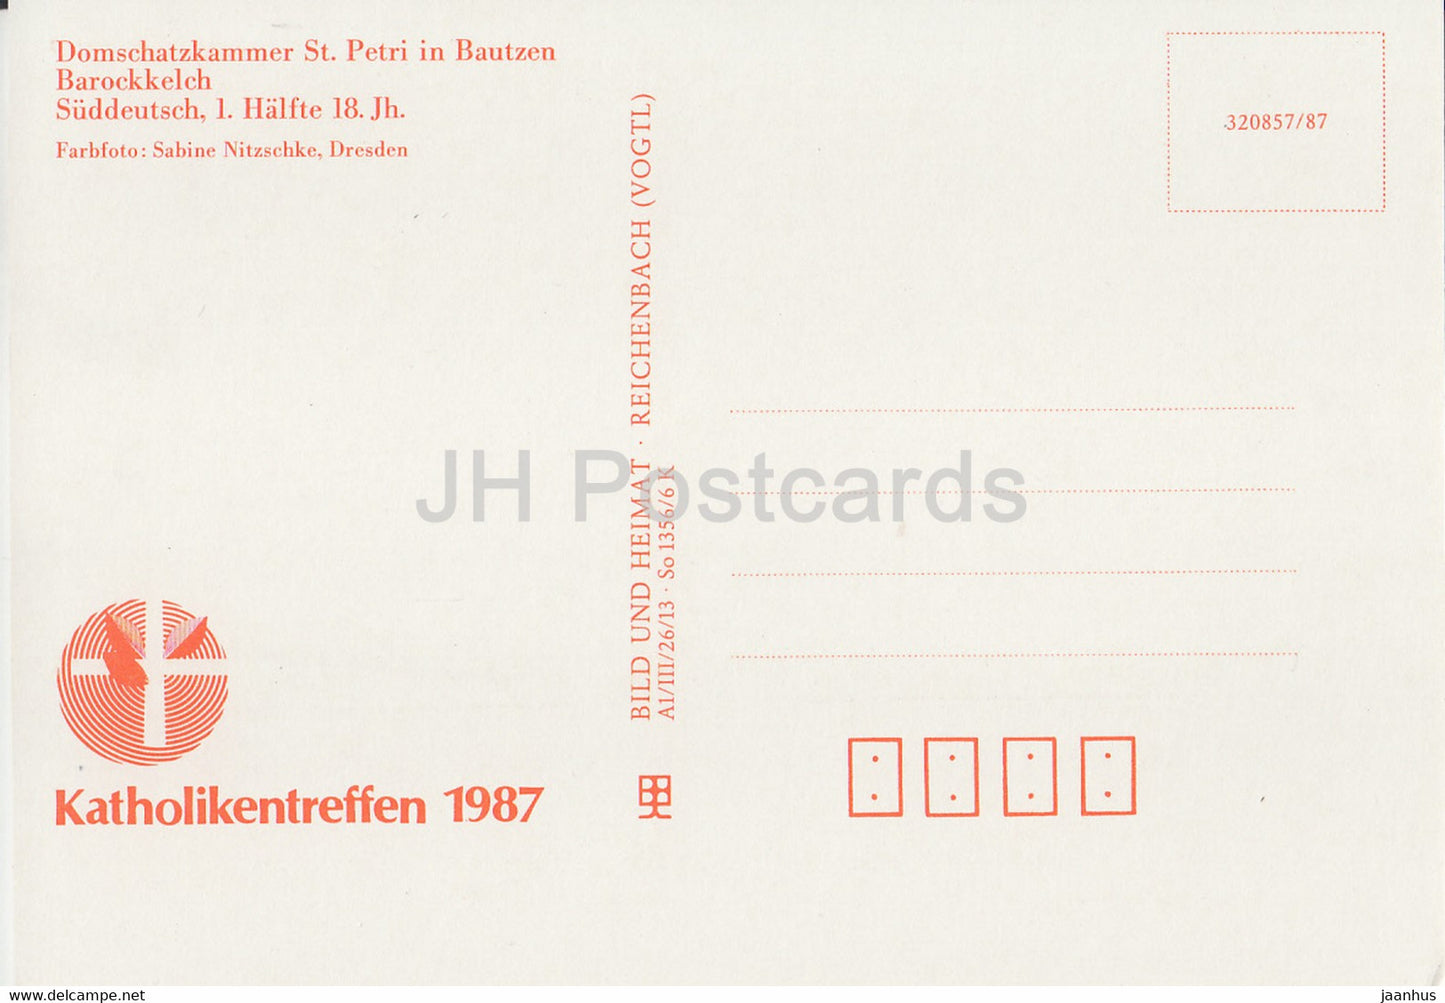 Barockkelch - calice - Domschatzkammer St Petri à Bautzen - 1987 - DDR Allemagne - inutilisé